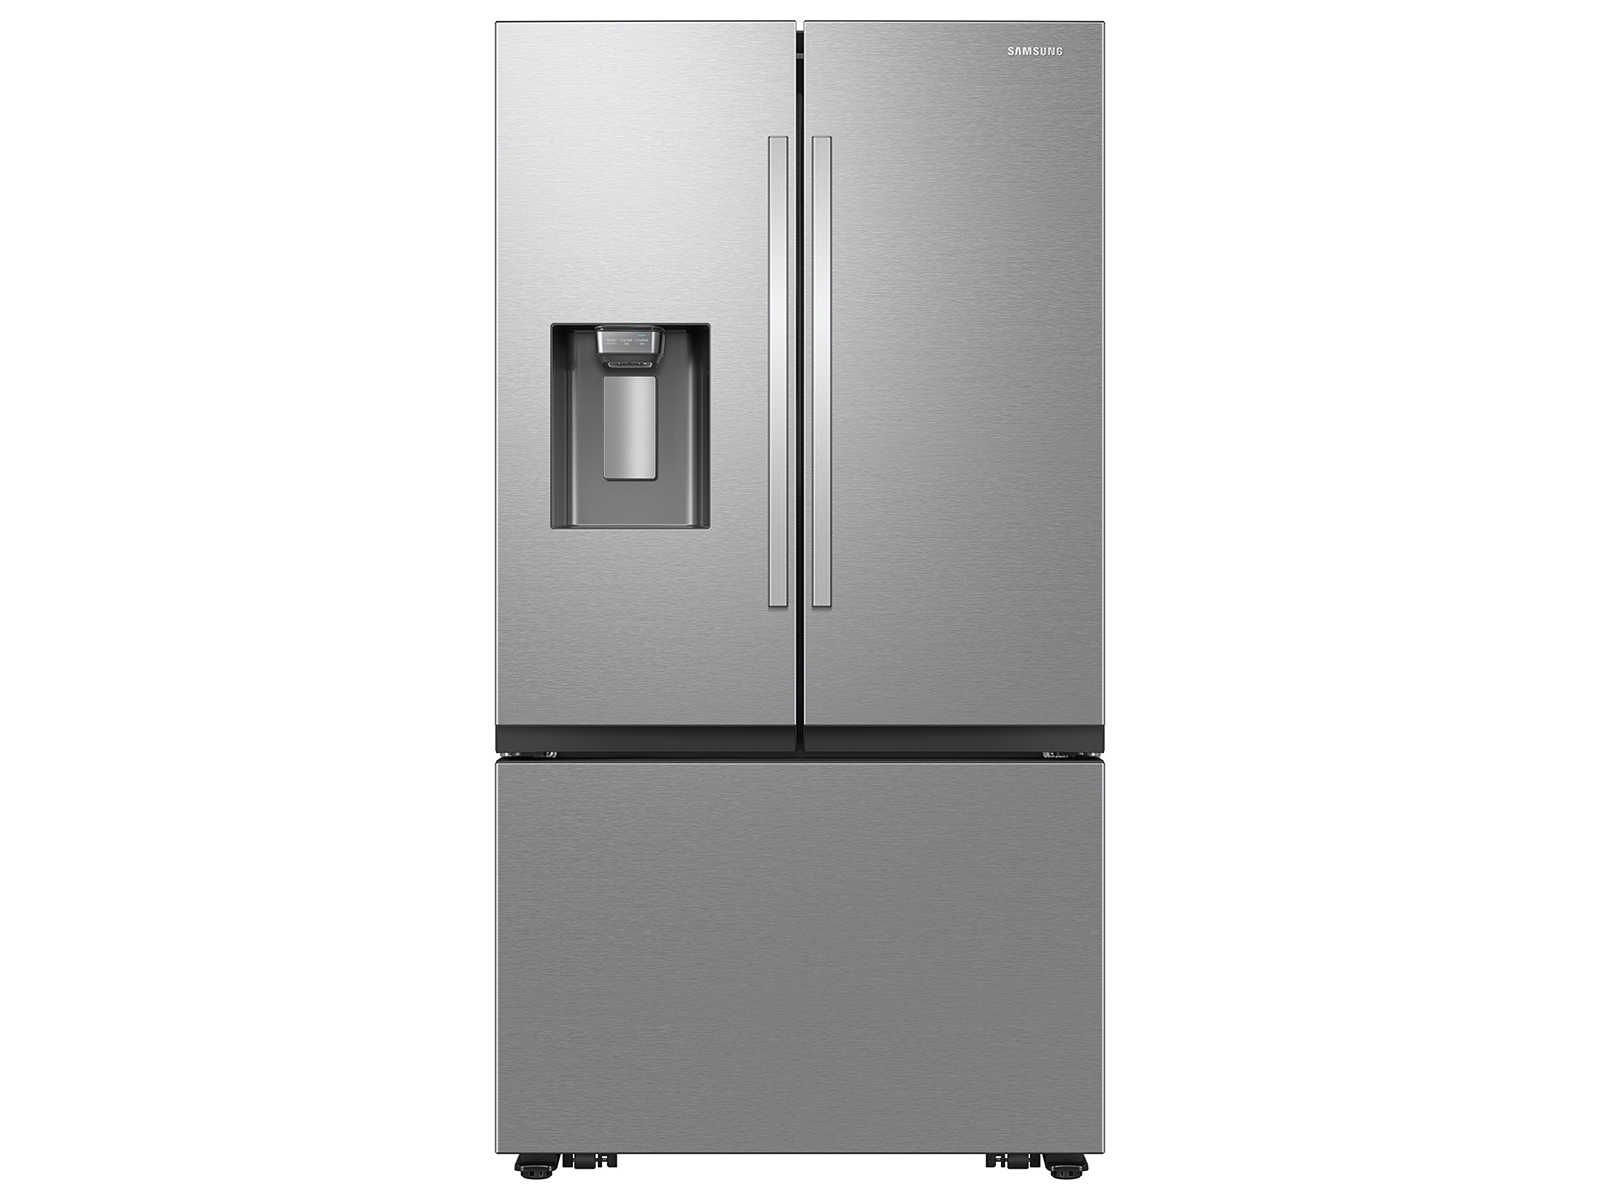 Photos - Fridge Samsung 26 cu. ft. Mega Capacity Counter Depth 3-Door French Door Refriger 